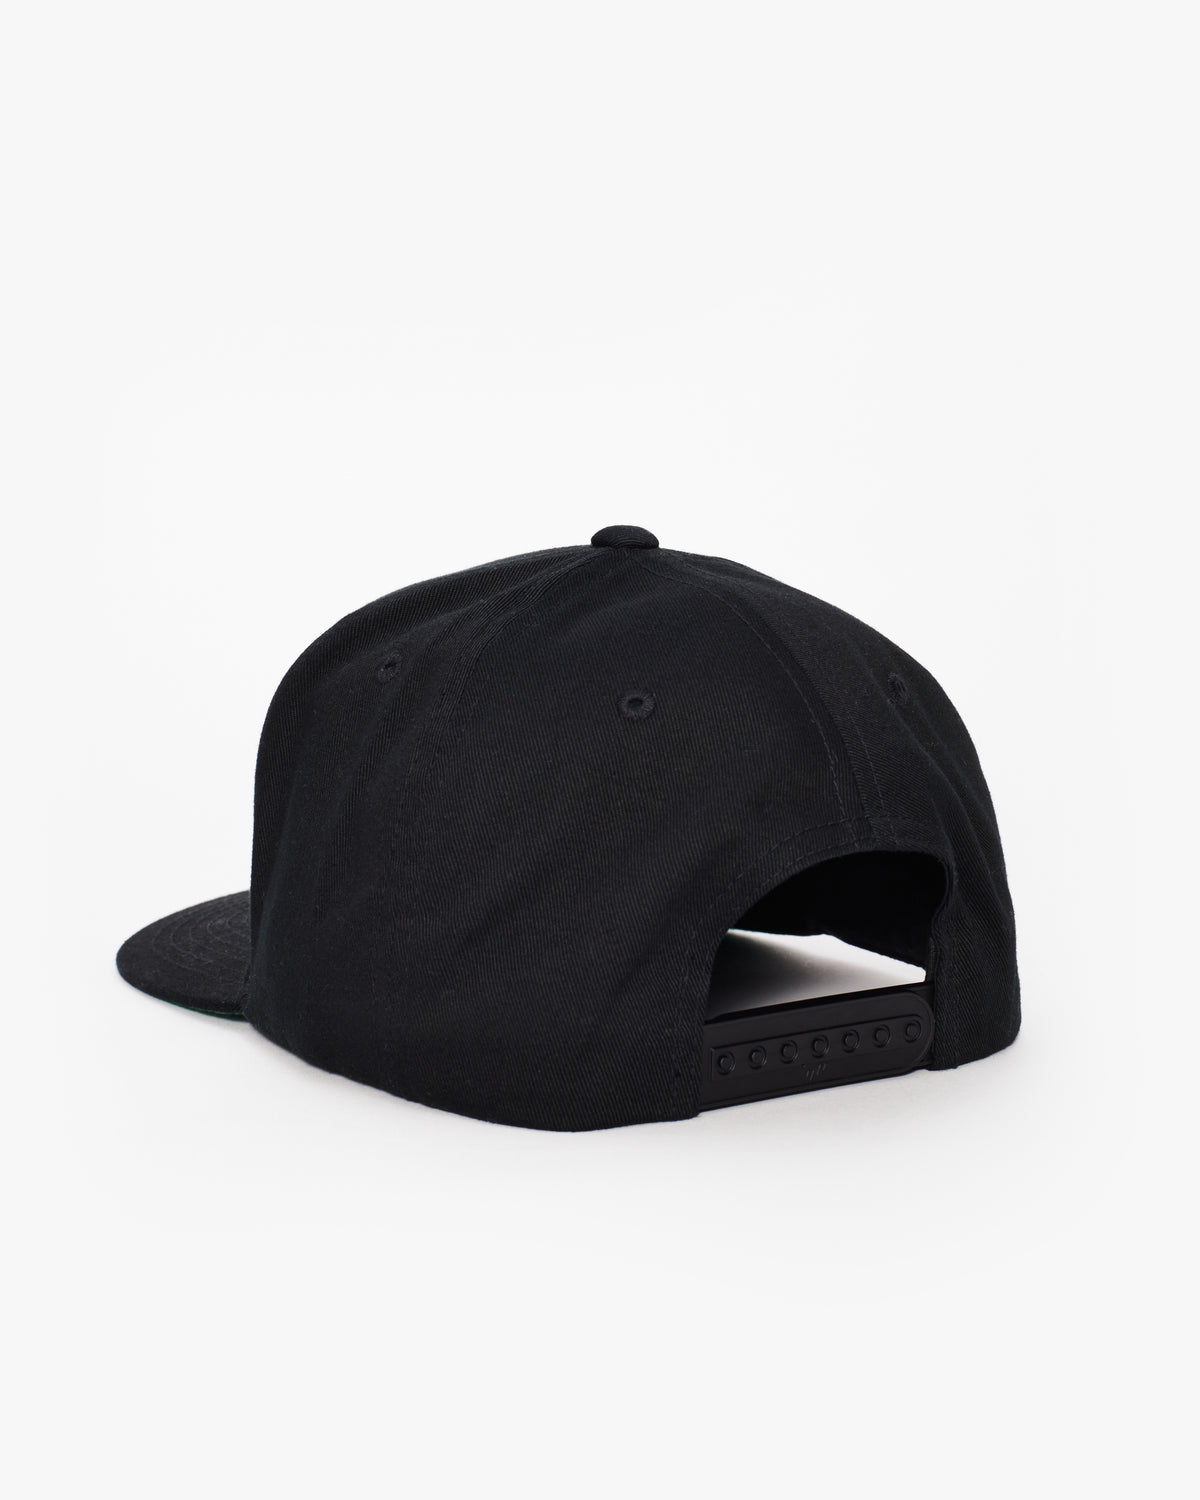 Equinox Snapback Flat Brim Hat – Equinox Shop at The